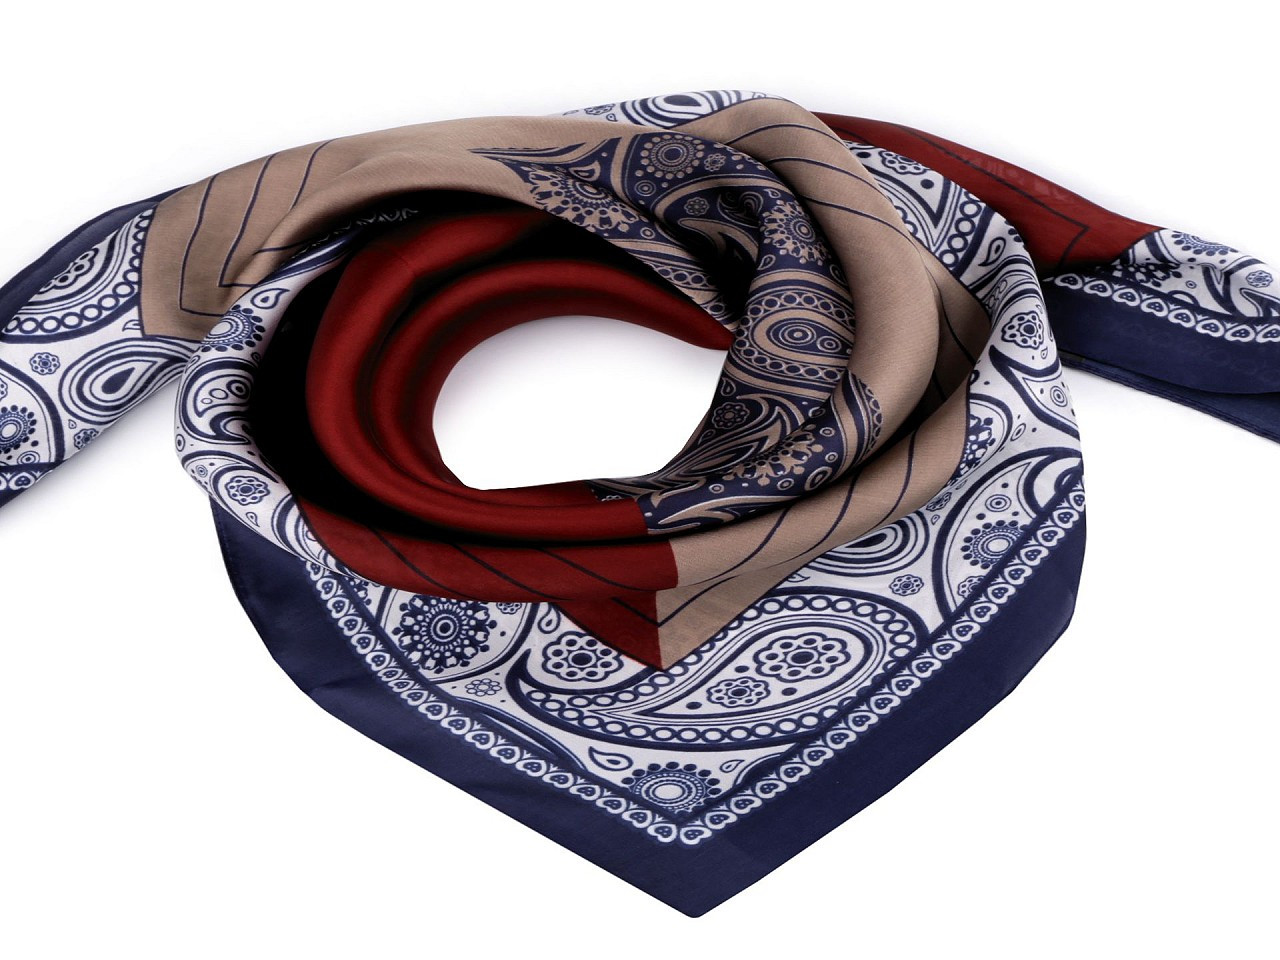 Saténový šátek paisley 70x70 cm, barva 1 modrá pařížská